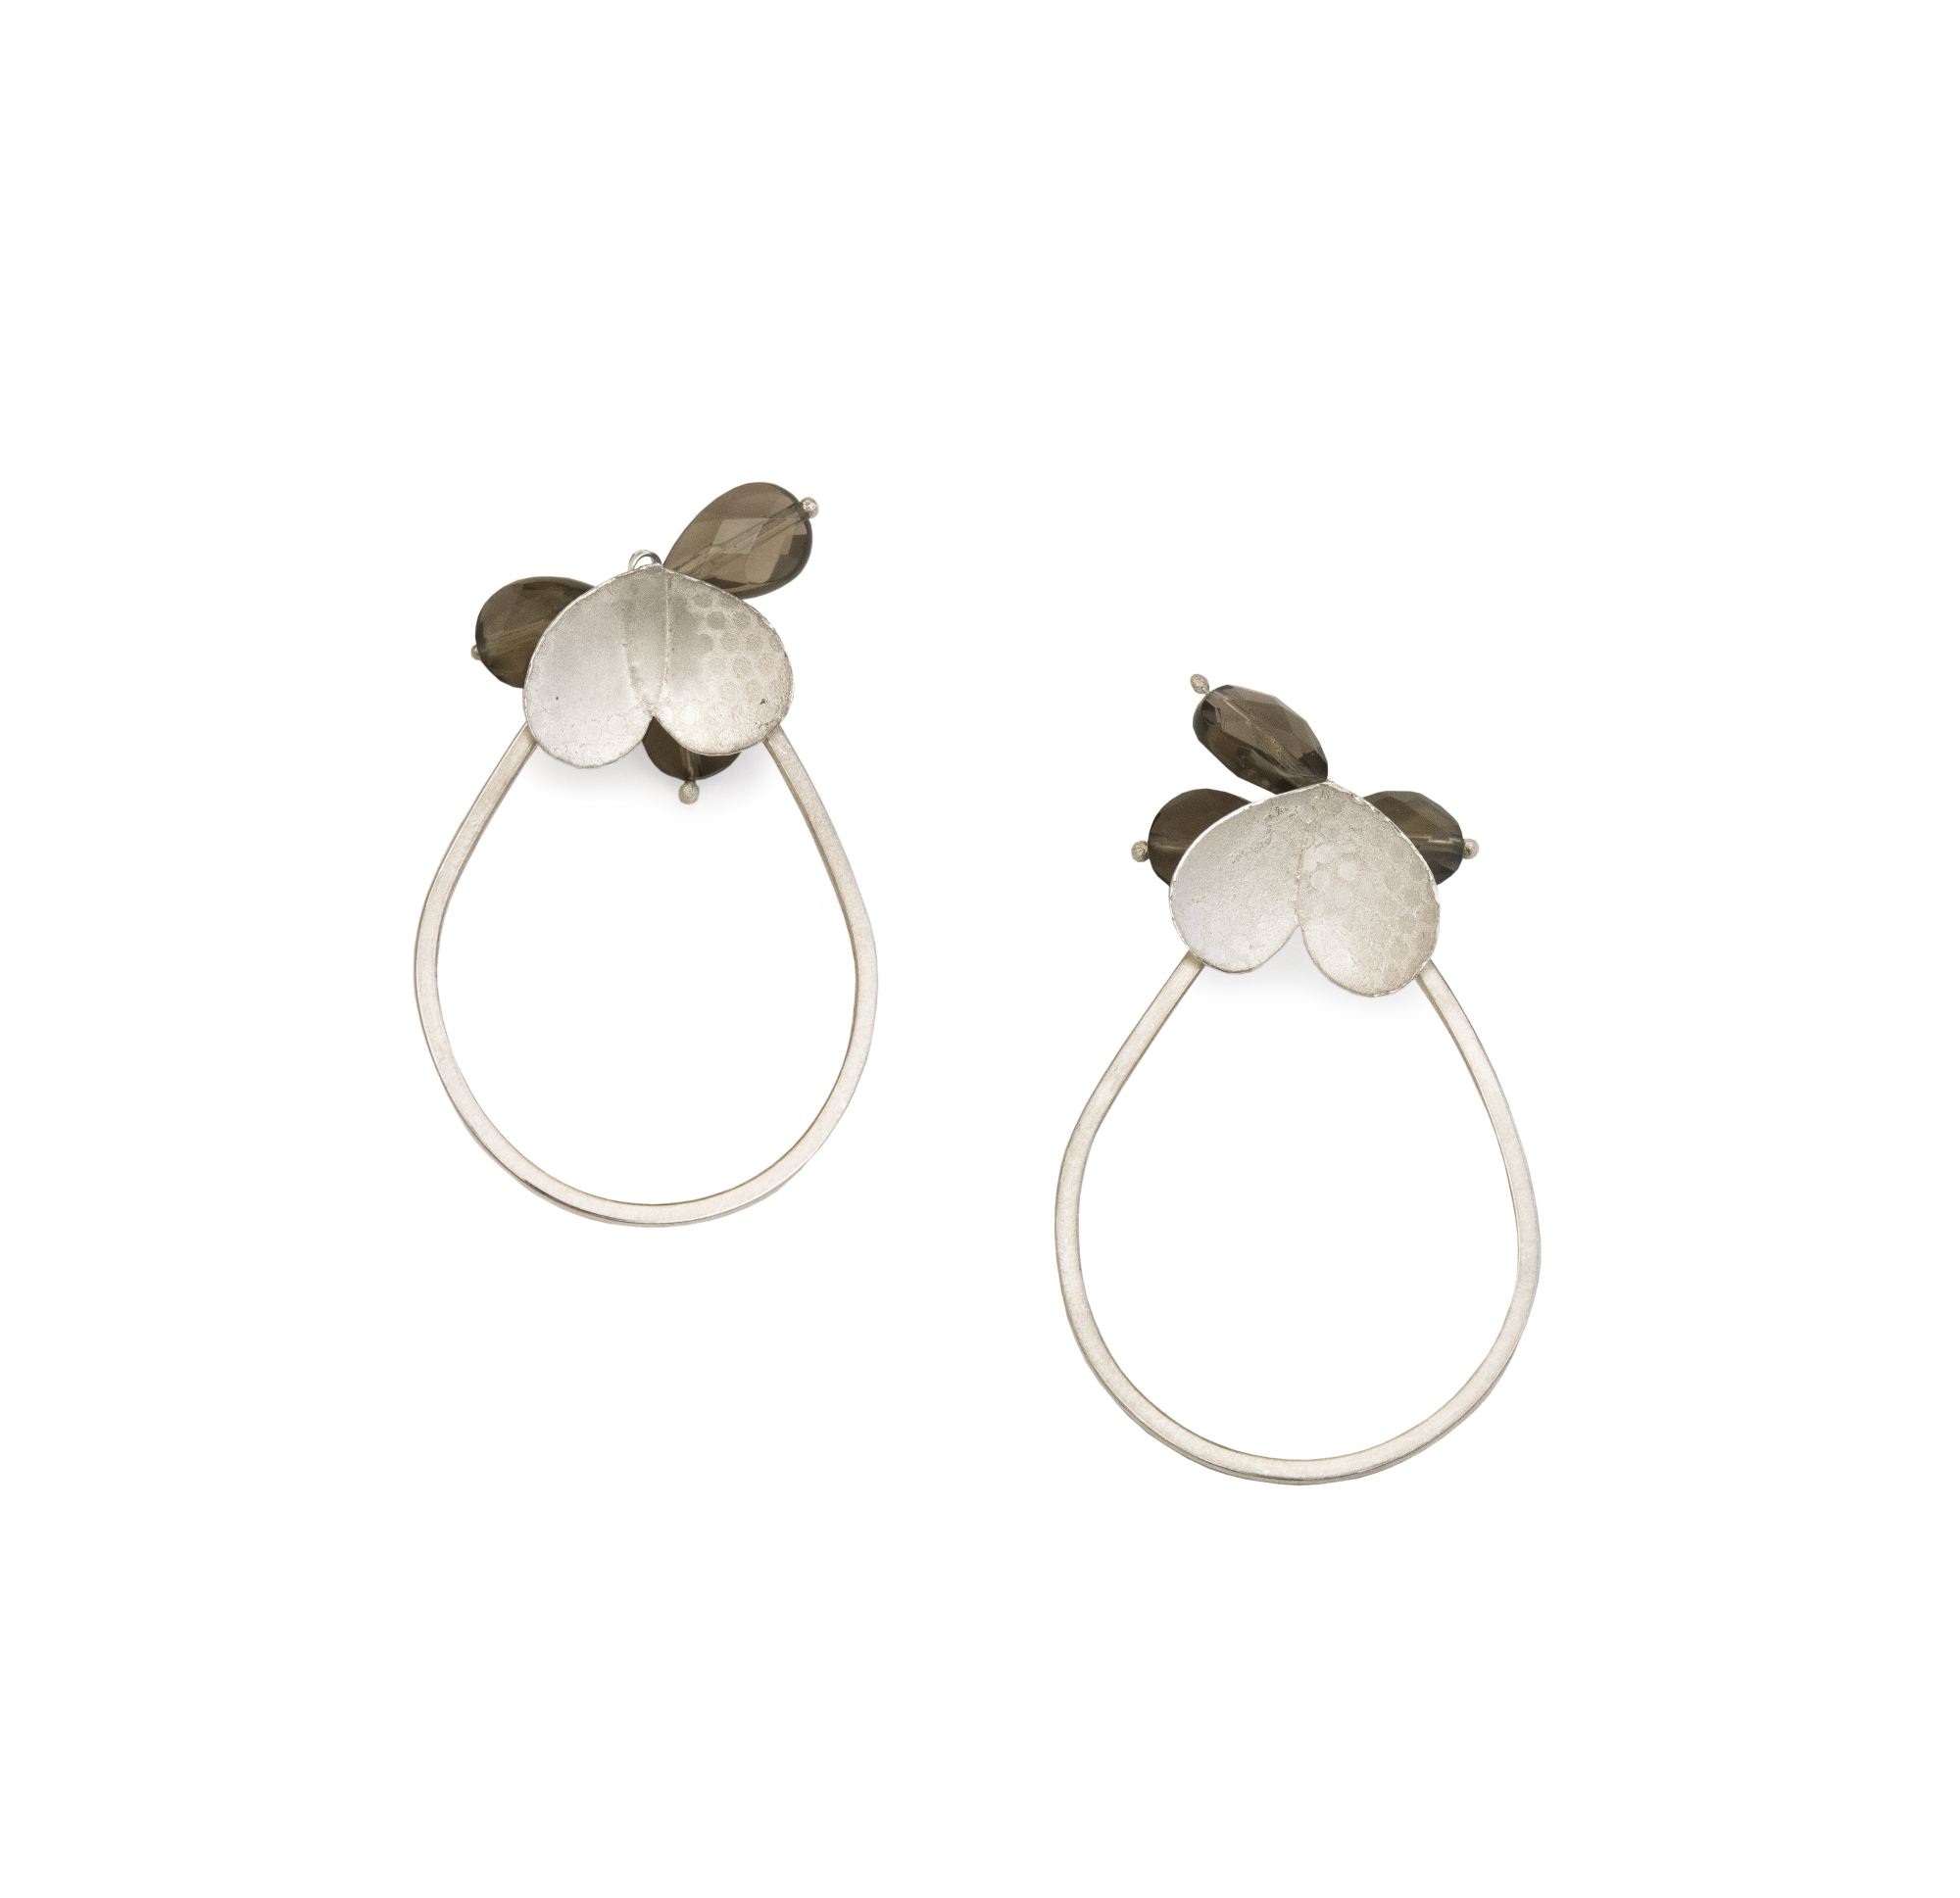 'Spotty Eucalyptus' earrings